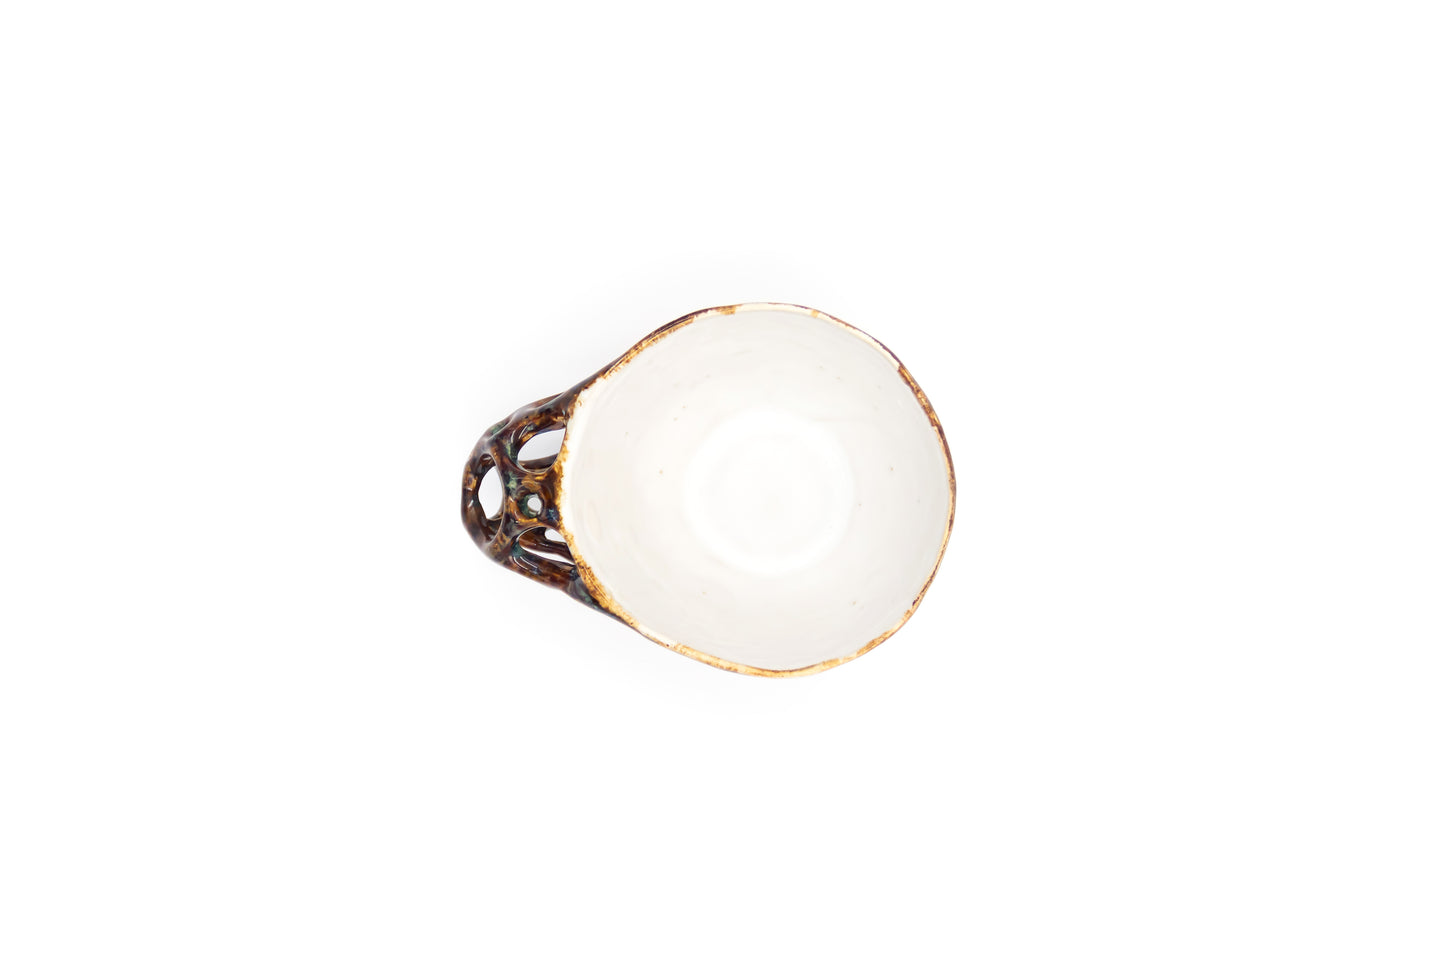 Kubek ceramiczny w kolorze biało-brązowym